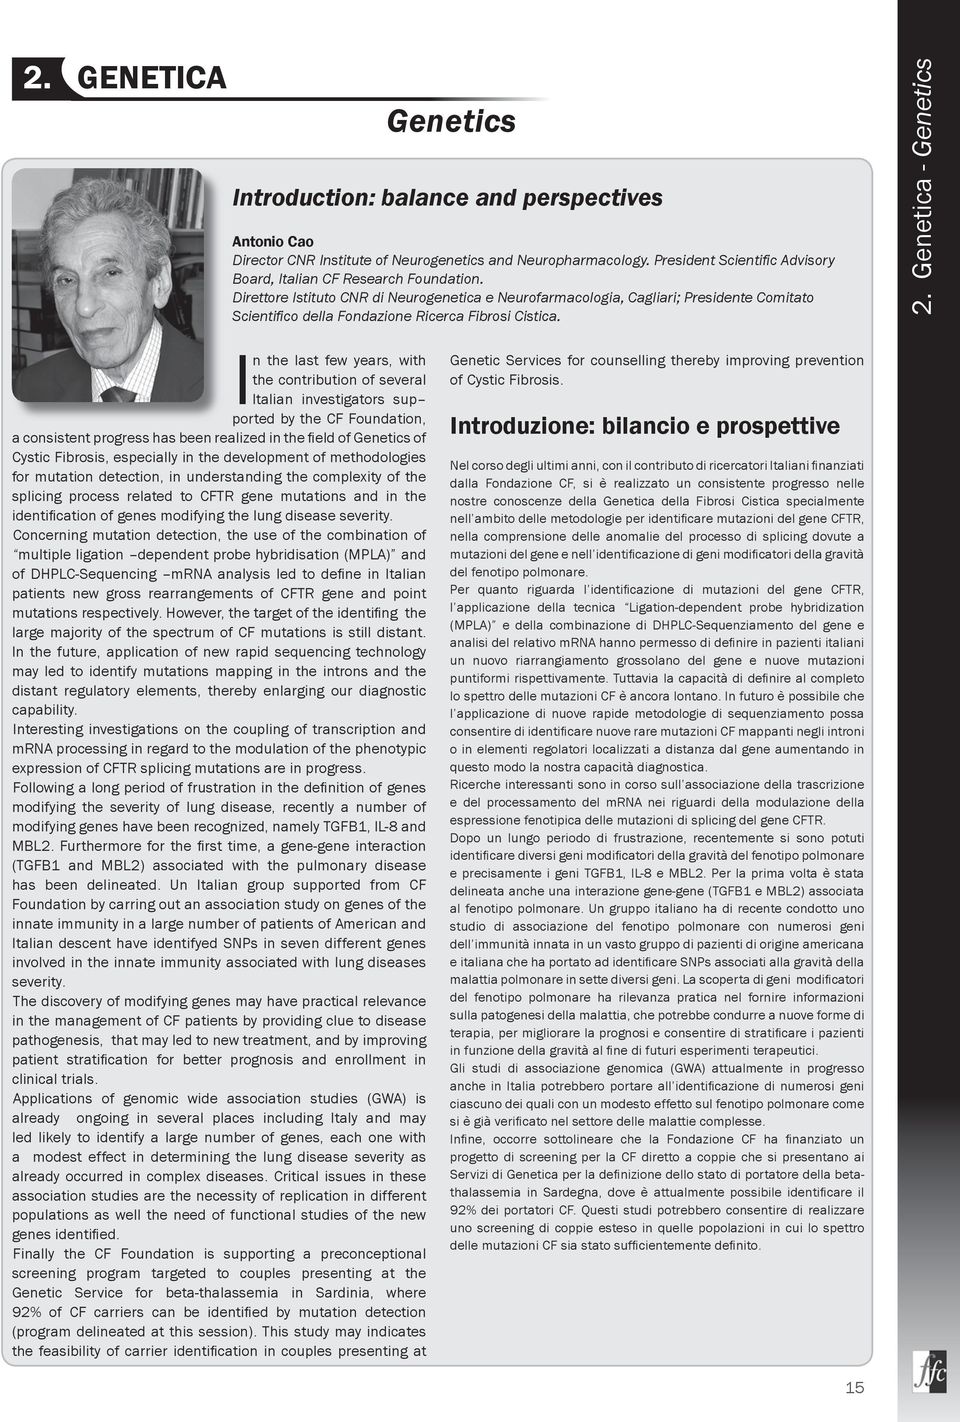 Direttore Istituto CNR di Neurogenetica e Neurofarmacologia, Cagliari; Presidente Comitato Scientifi co della Fondazione Ricerca Fibrosi Cistica. 2.